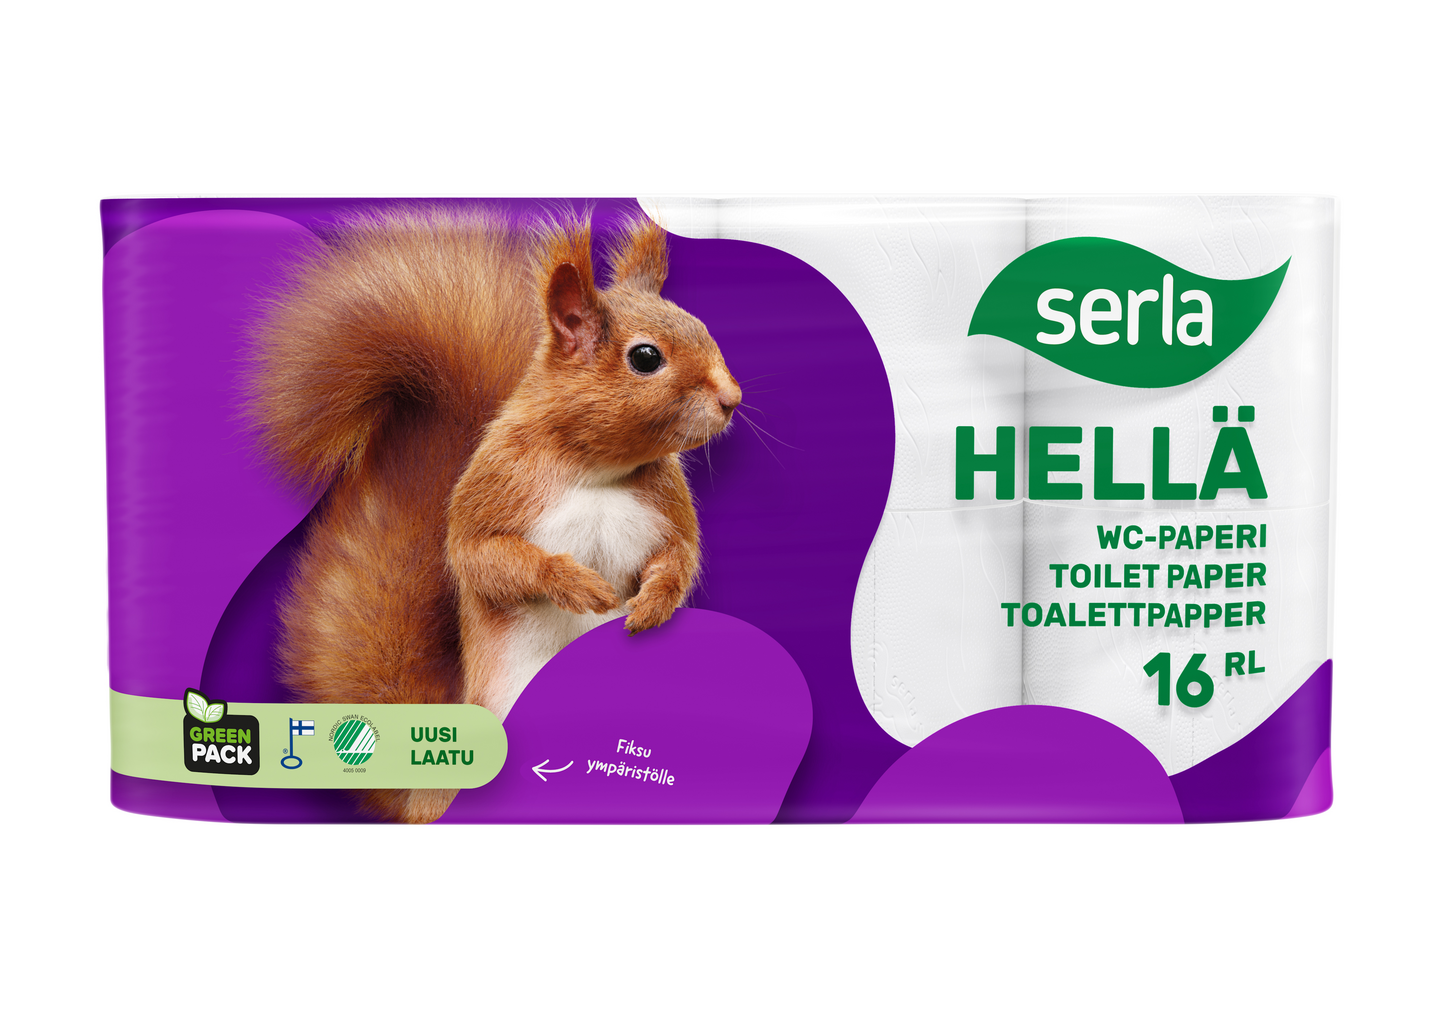 Serla Hellä wc-paperi 16rl valkoinen